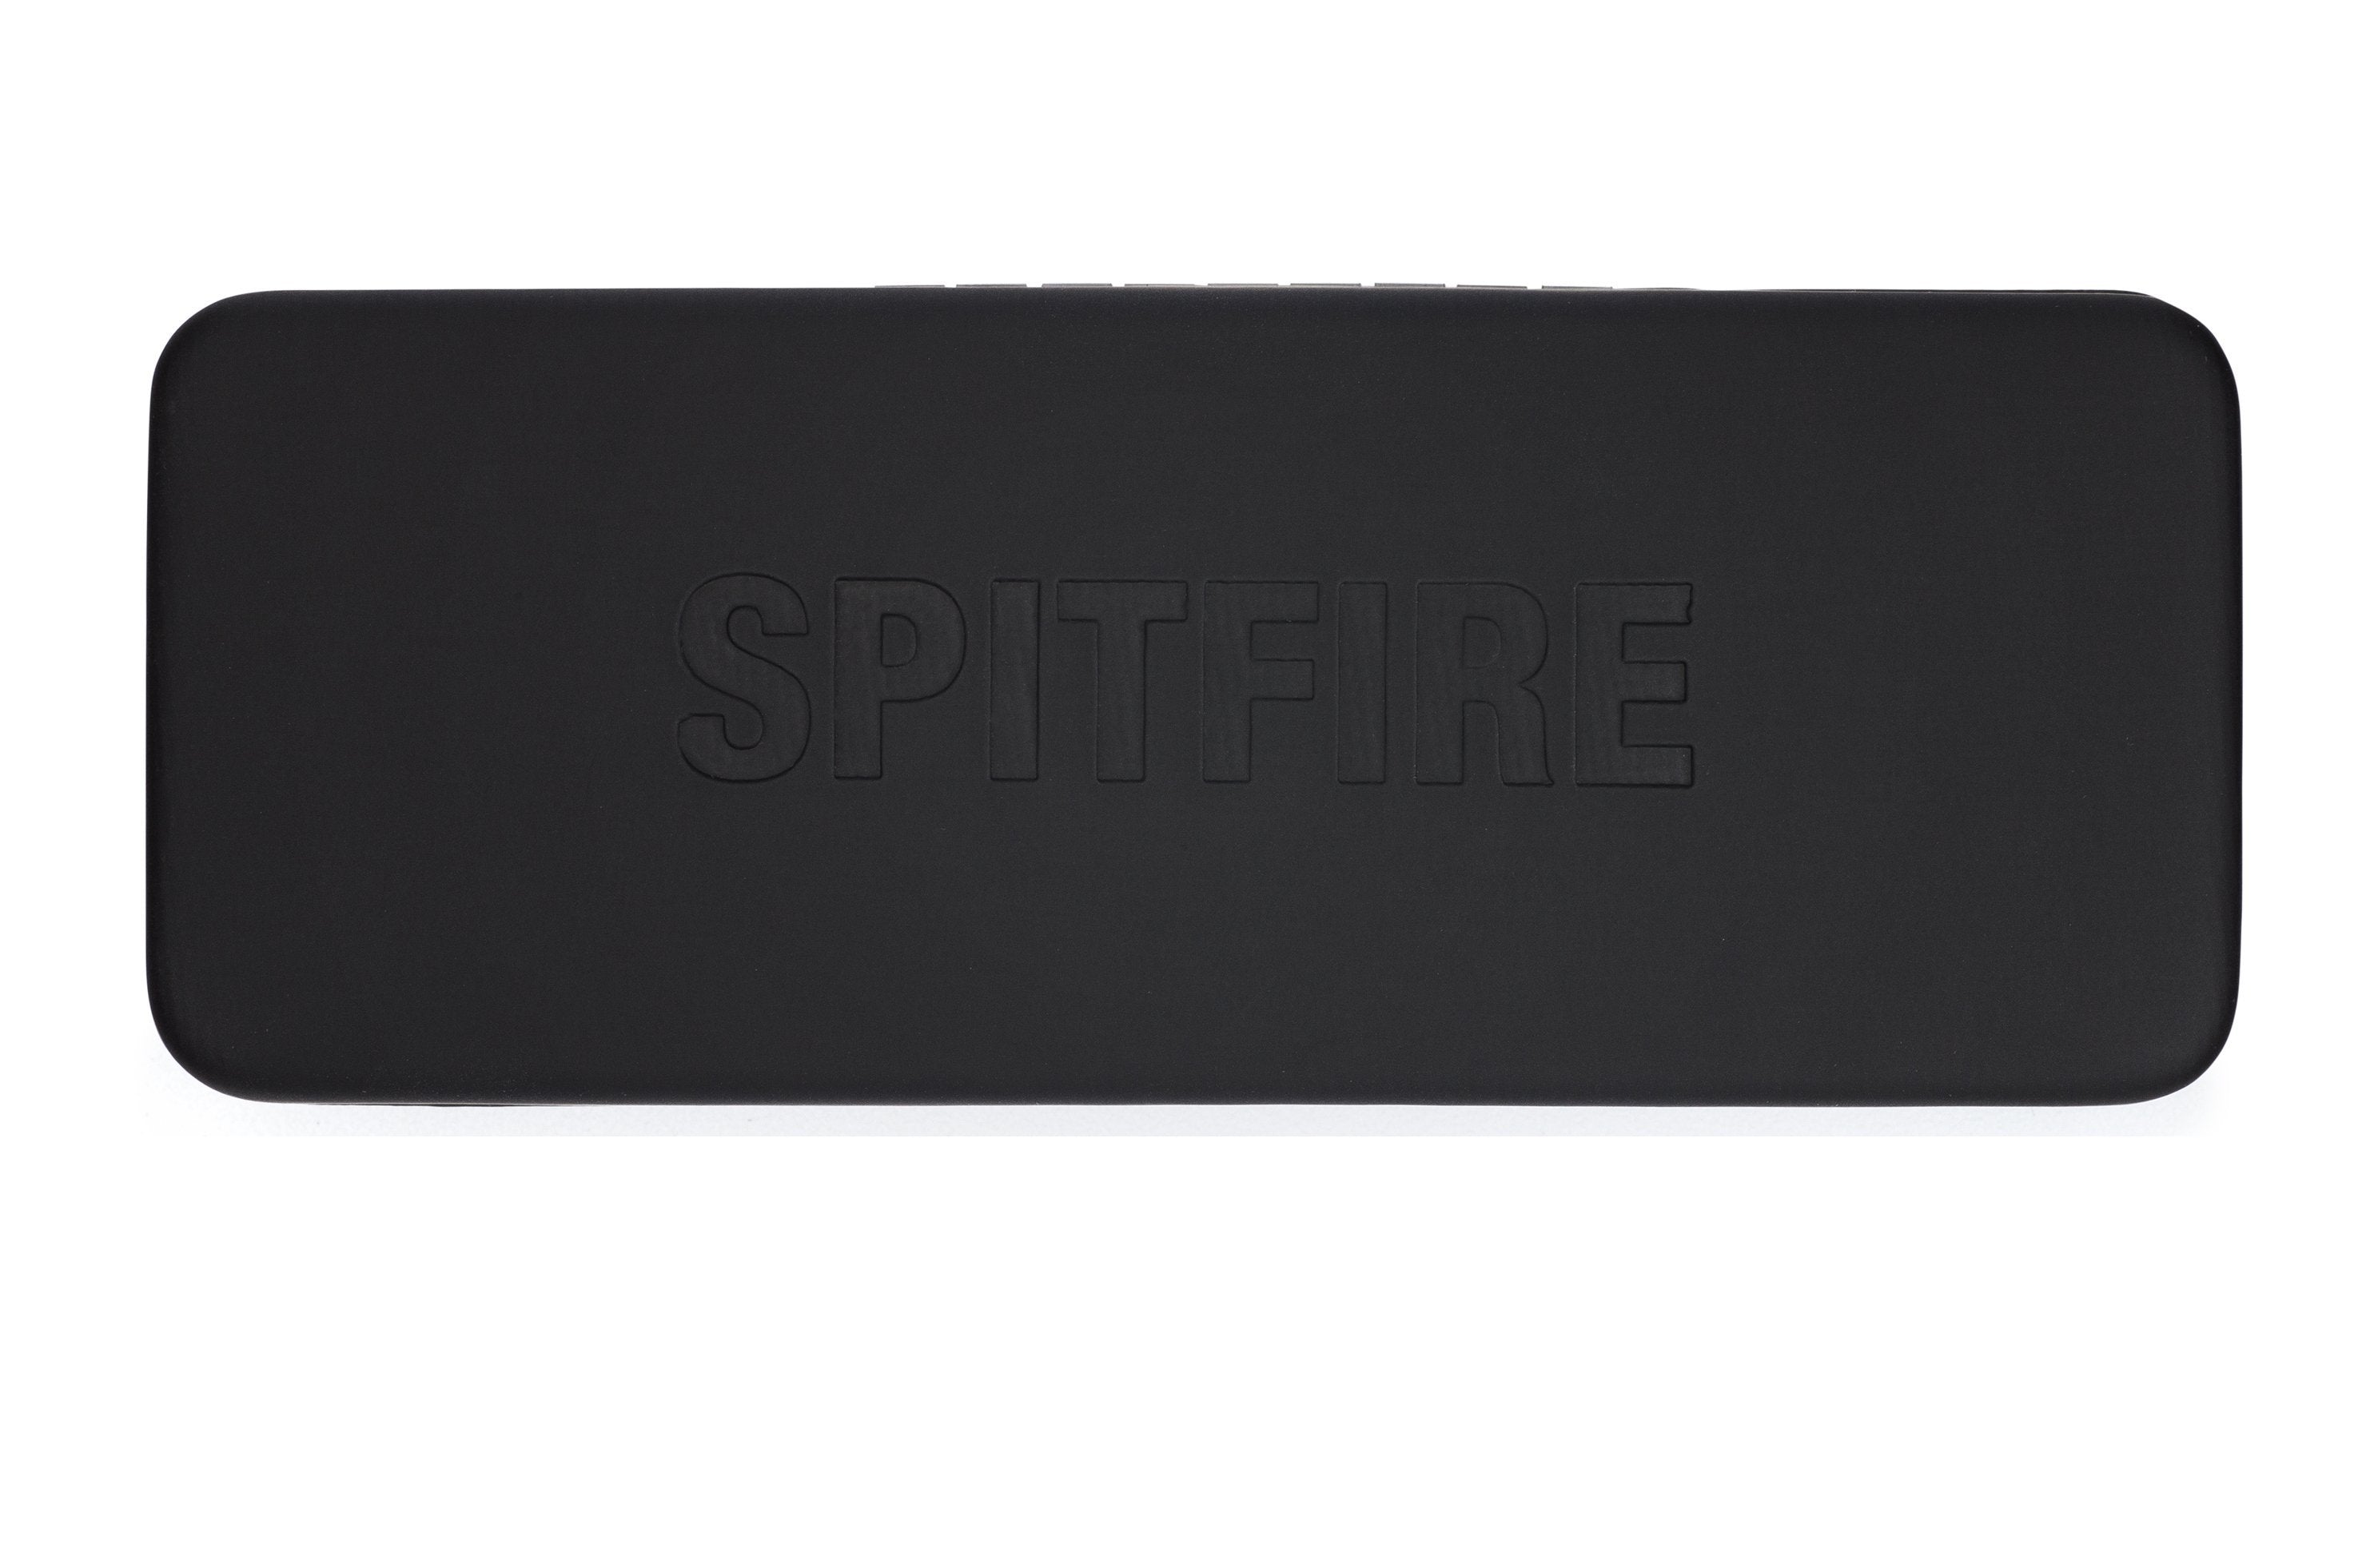 cut twenty four (blue light blocker) - Spitfire